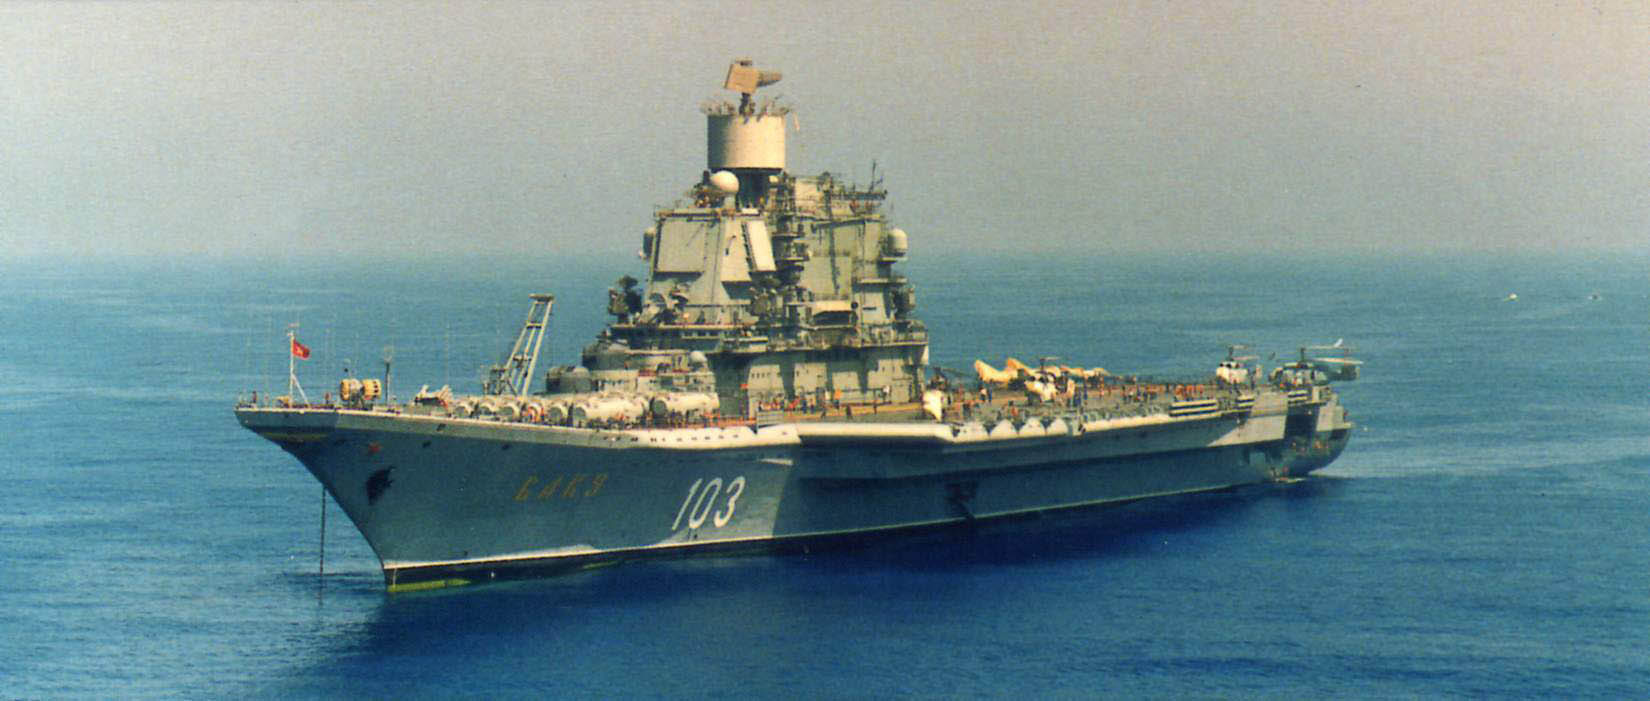 前所造驱逐舰以各加盟共和国首都来命名的惯例,分别取名为"基辅号","